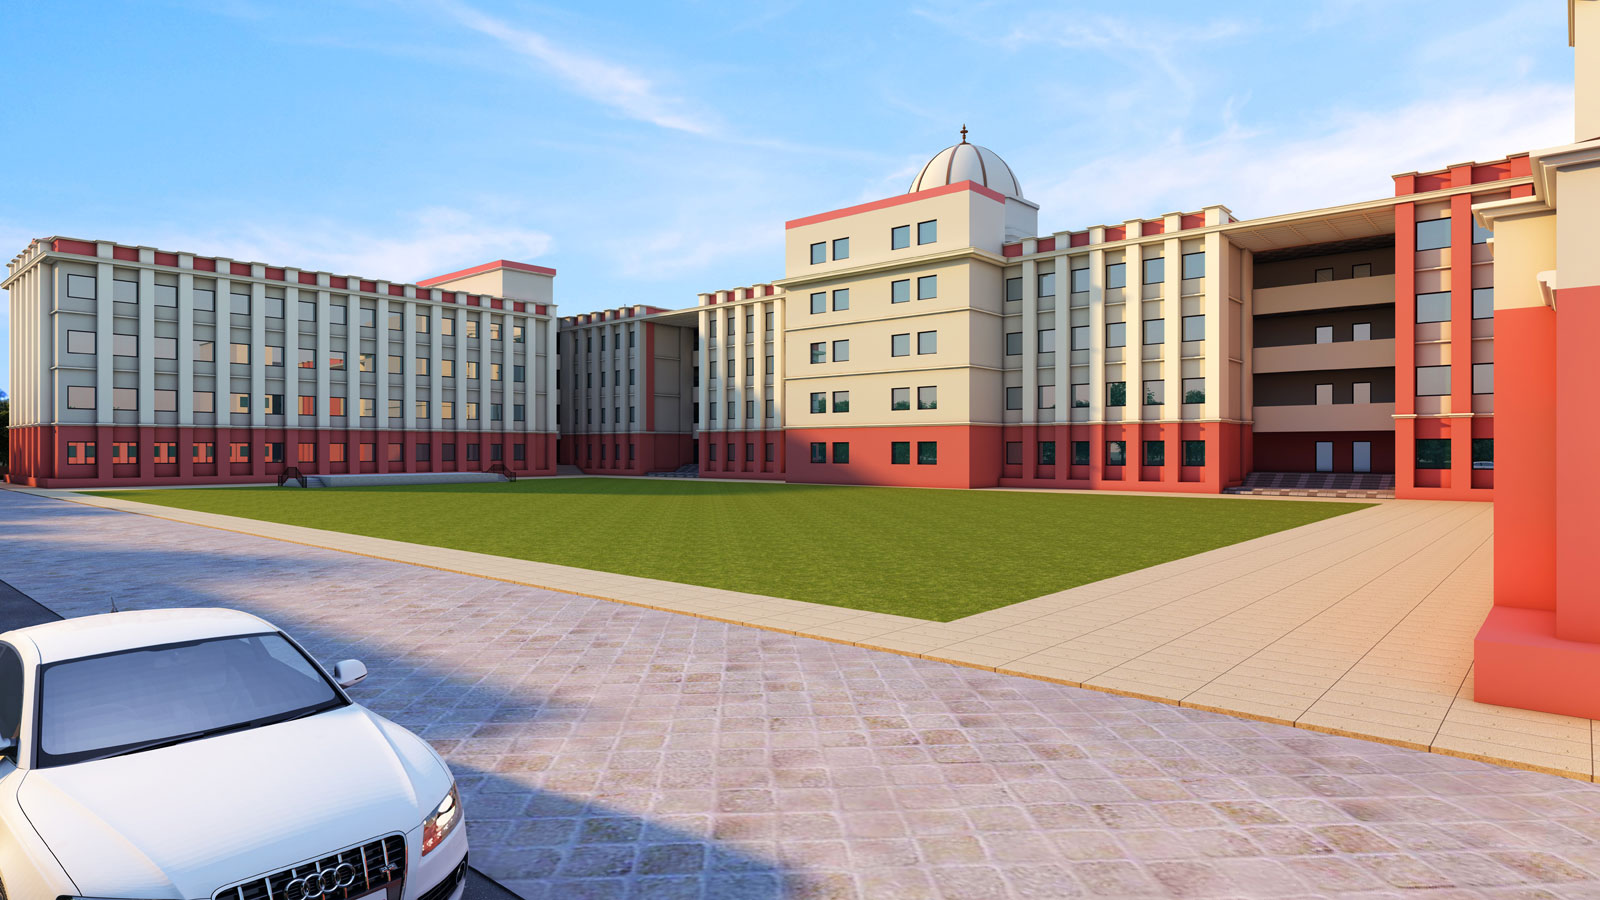 BEST VASTU DESIGN FOR NEW SCHOOL BUILDING IN INDIA